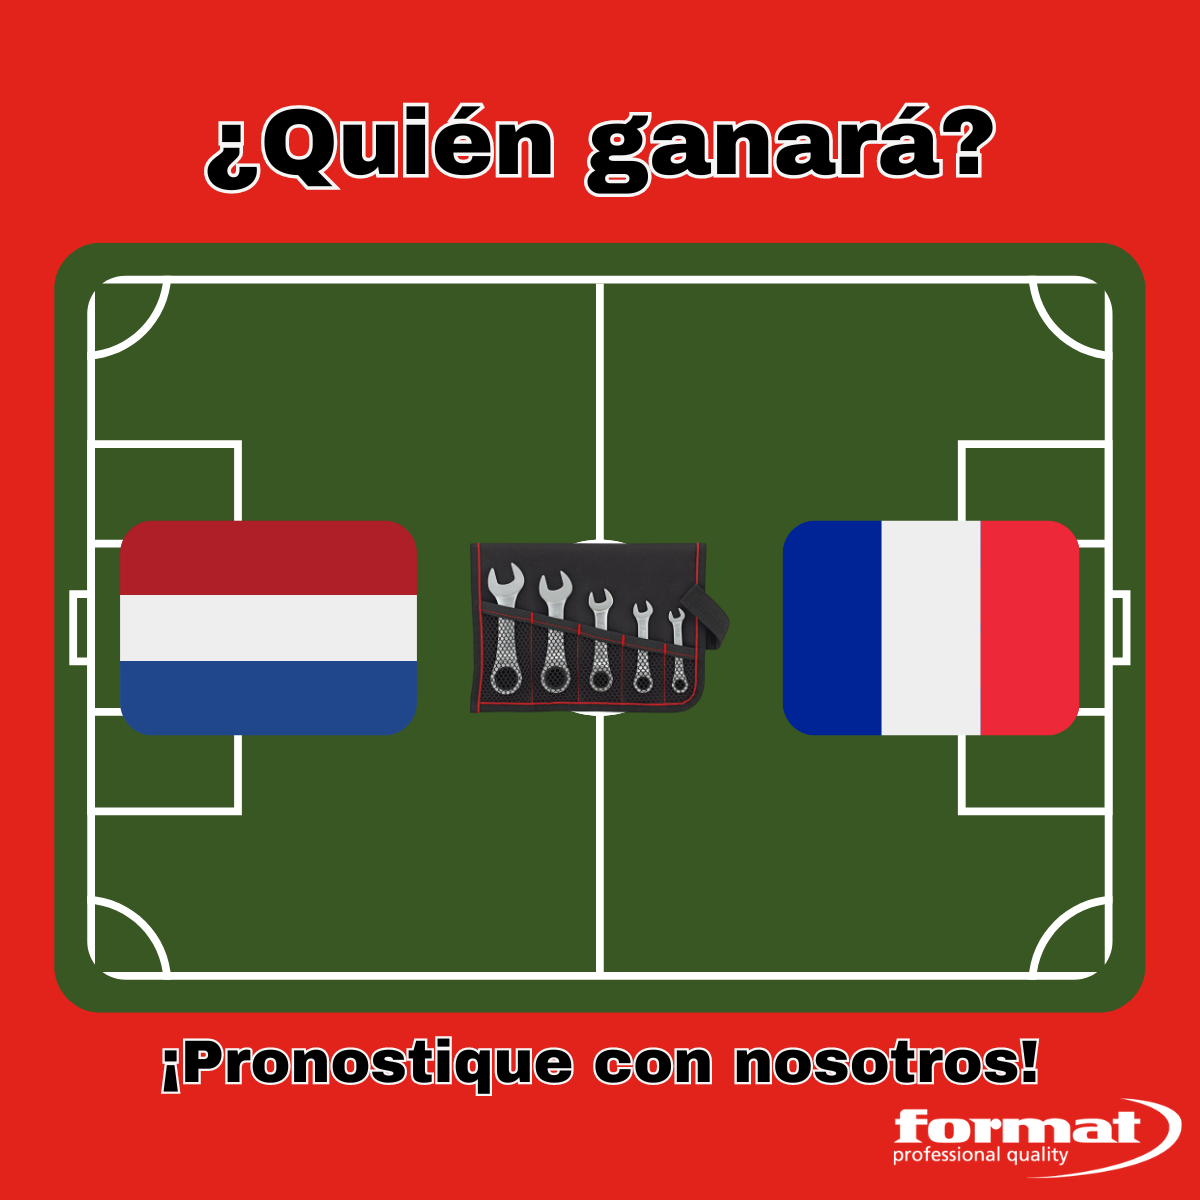 ¿Quién ganará el partido entre Holanda y Francia?